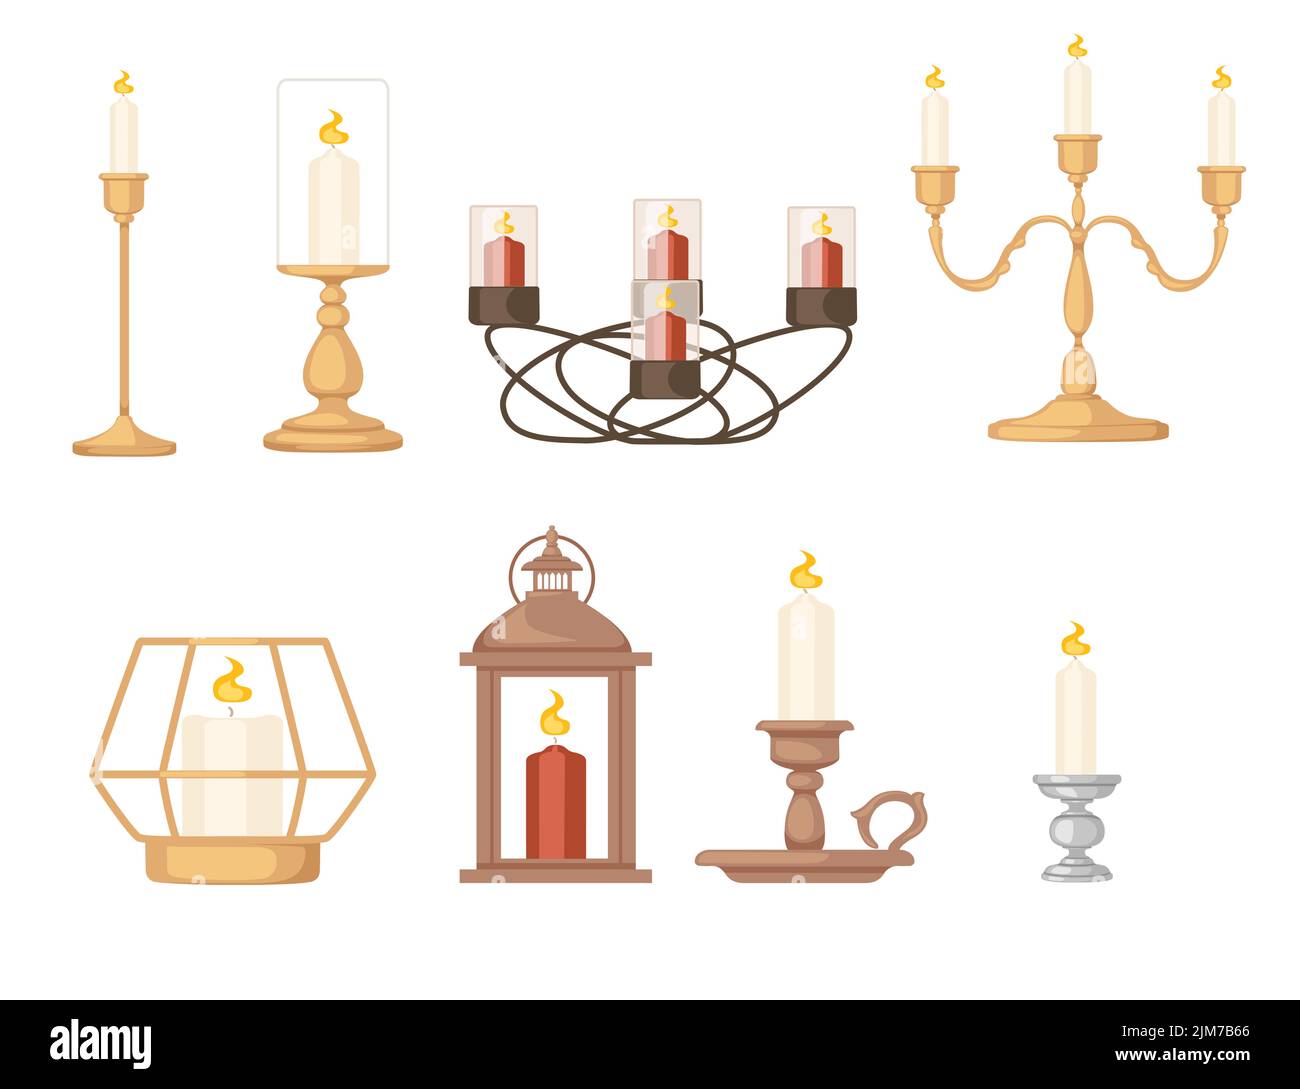 Ensemble de bougies en chandeliers stand design vintage illustration vectorielle isolée sur fond blanc Illustration de Vecteur